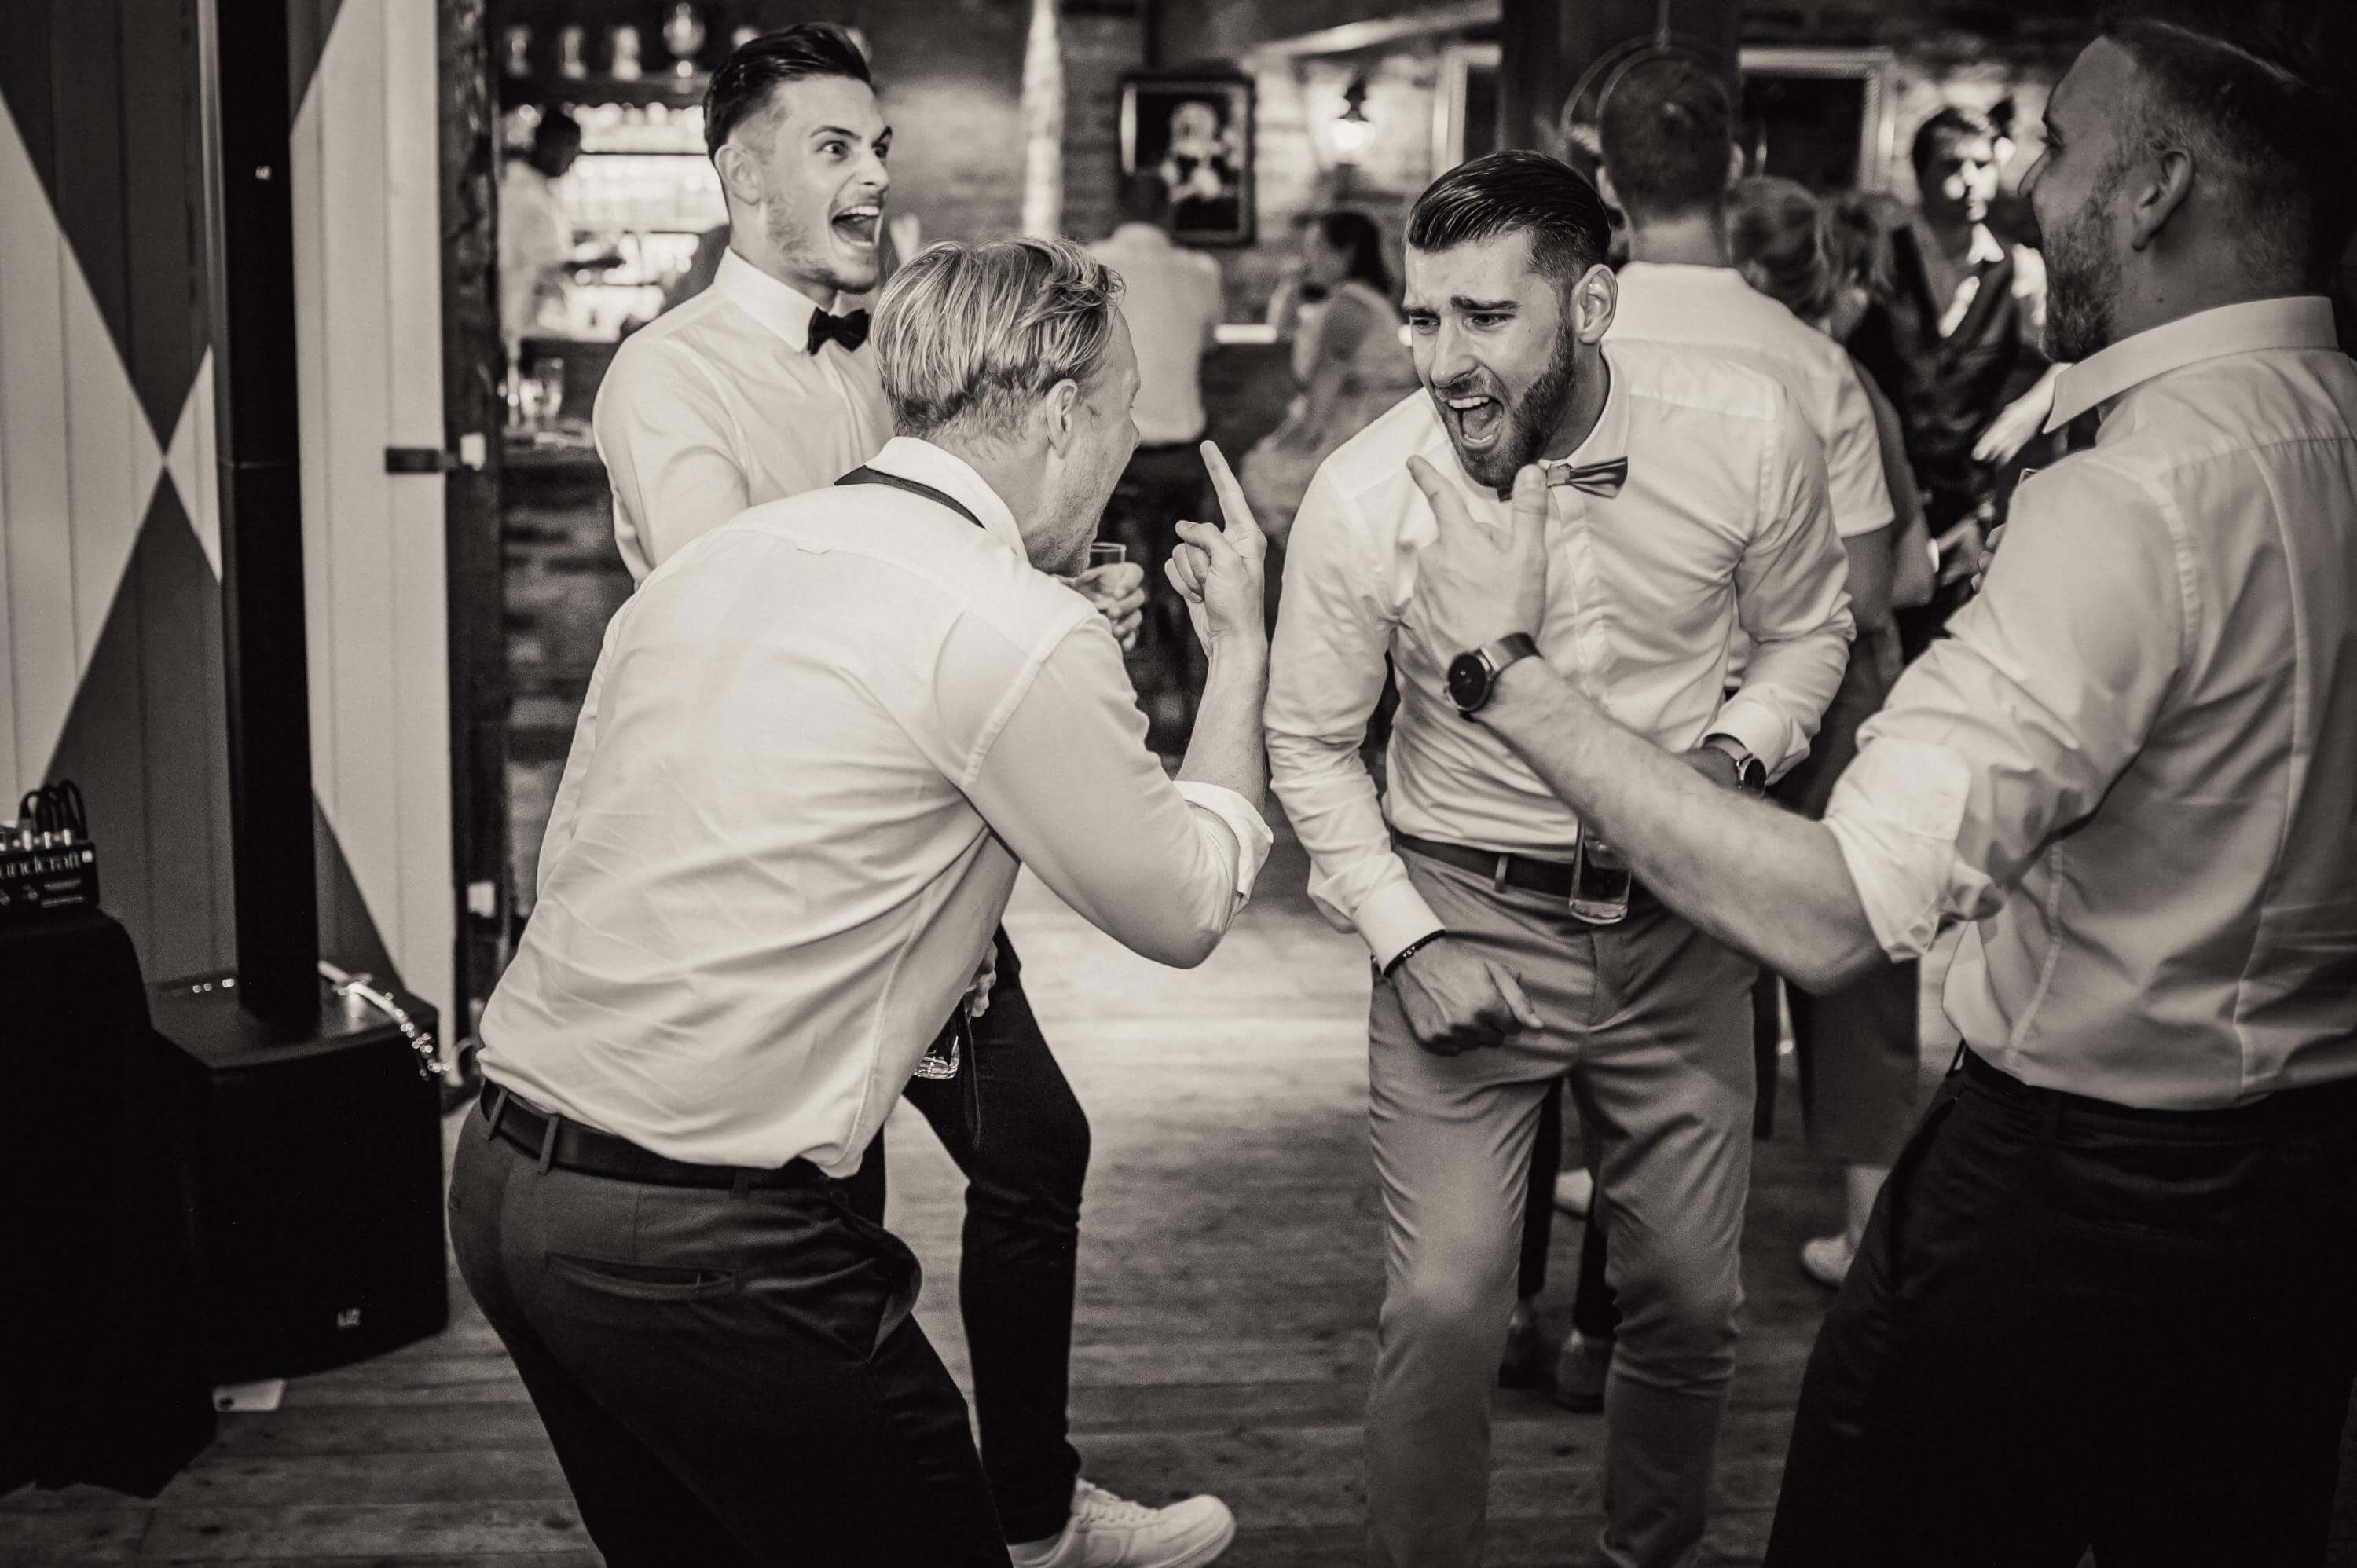 Extrem gelöst und aufgedreht tanzen junge Männer in hellen Hemden und mit freudig aggressivem Gesichtsausdruck bei einer Hochzeit frei nebeneinander.